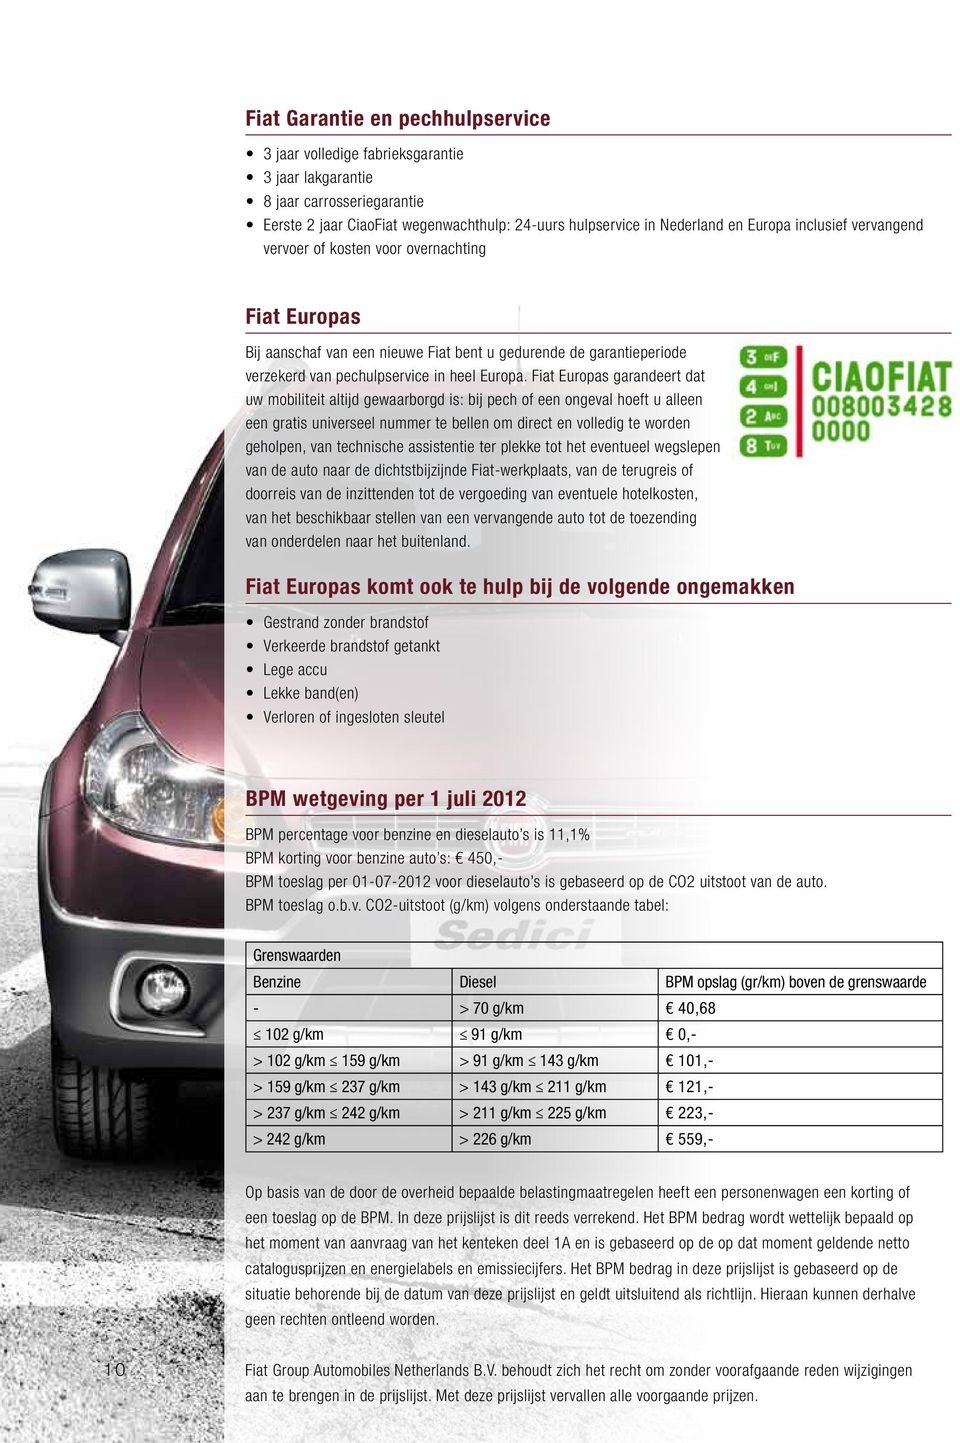 Fiat Europas garandeert dat uw mobiliteit altijd gewaarborgd is: bij pech of een ongeval hoeft u alleen een gratis universeel nummer te bellen om direct en volledig te worden geholpen, van technische